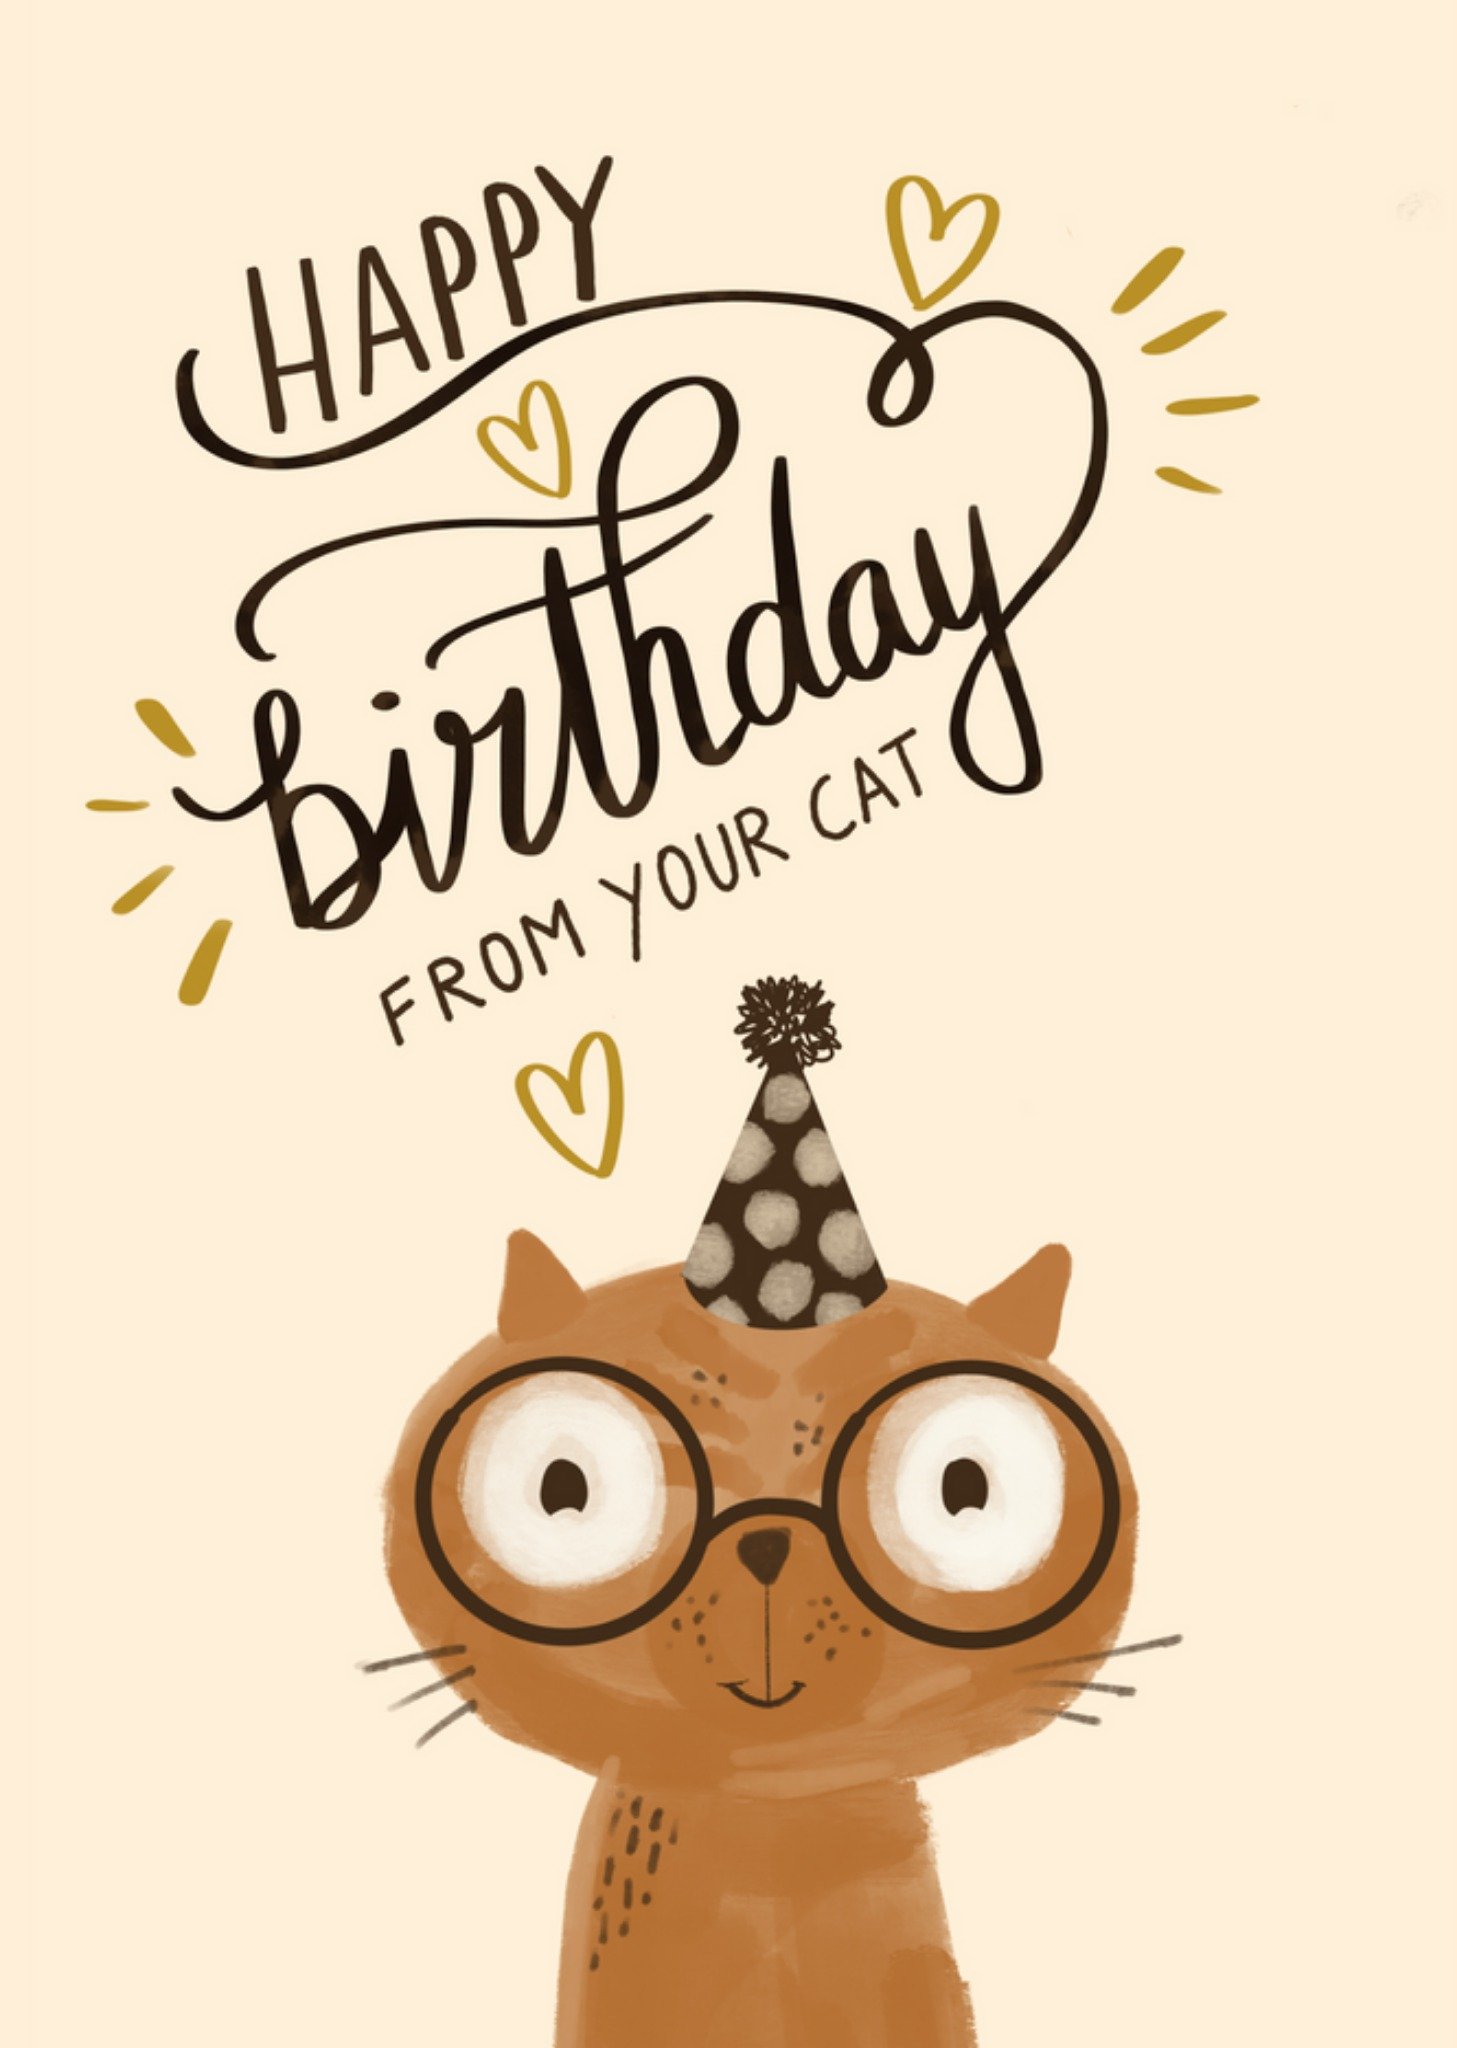 Tsjip - Verjaardagskaart - From your cat